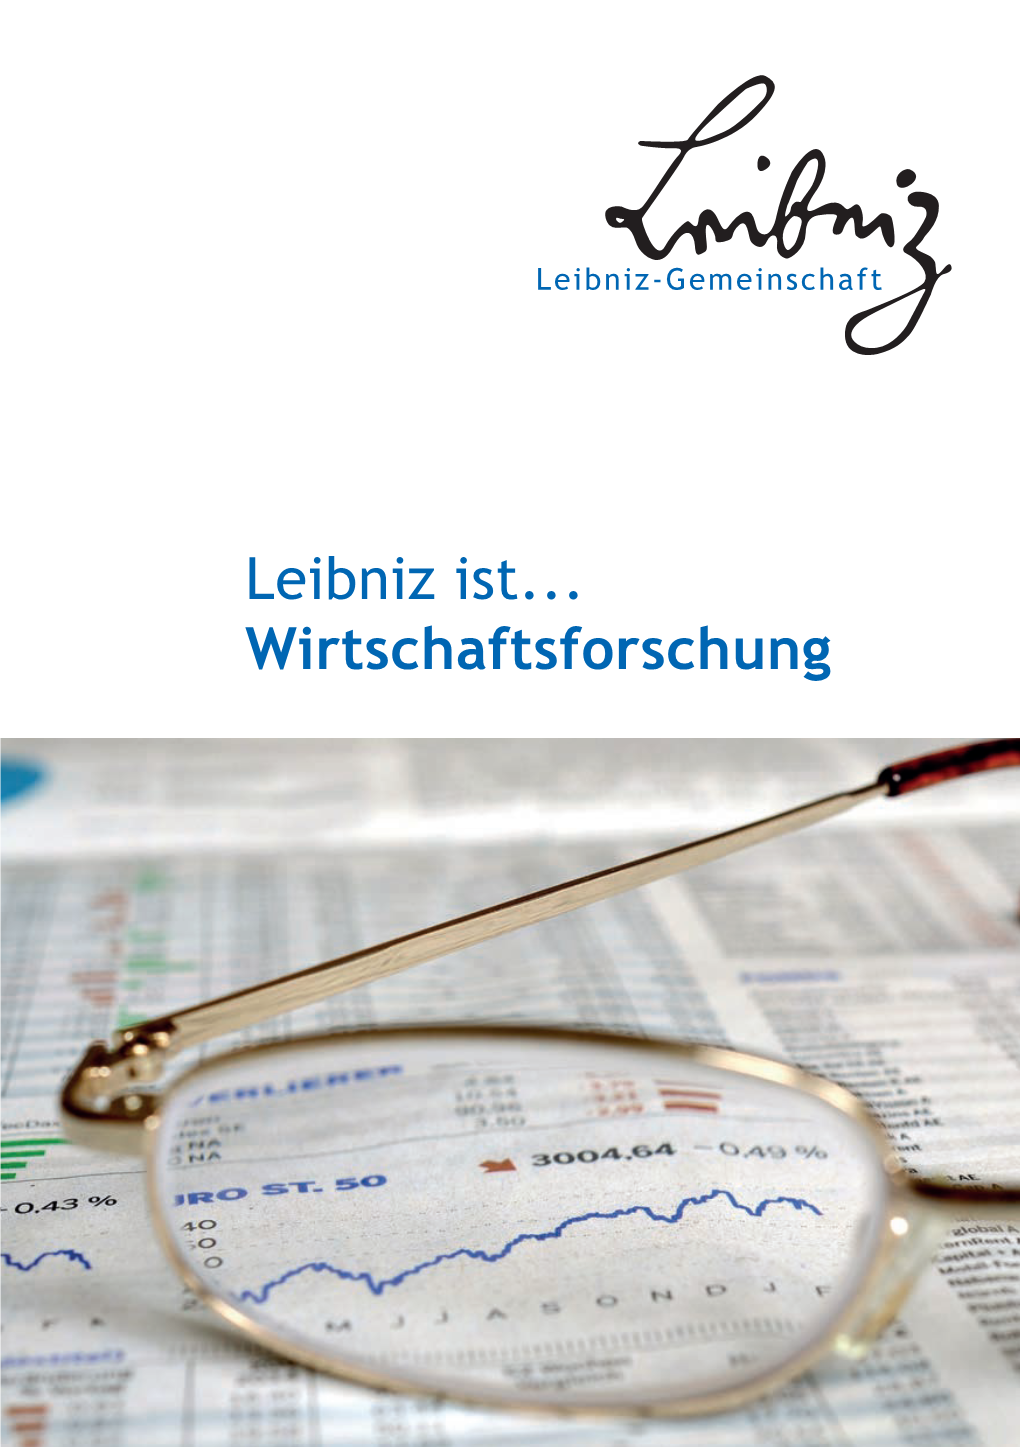 Leibniz Ist...Wirtschaftsforschung